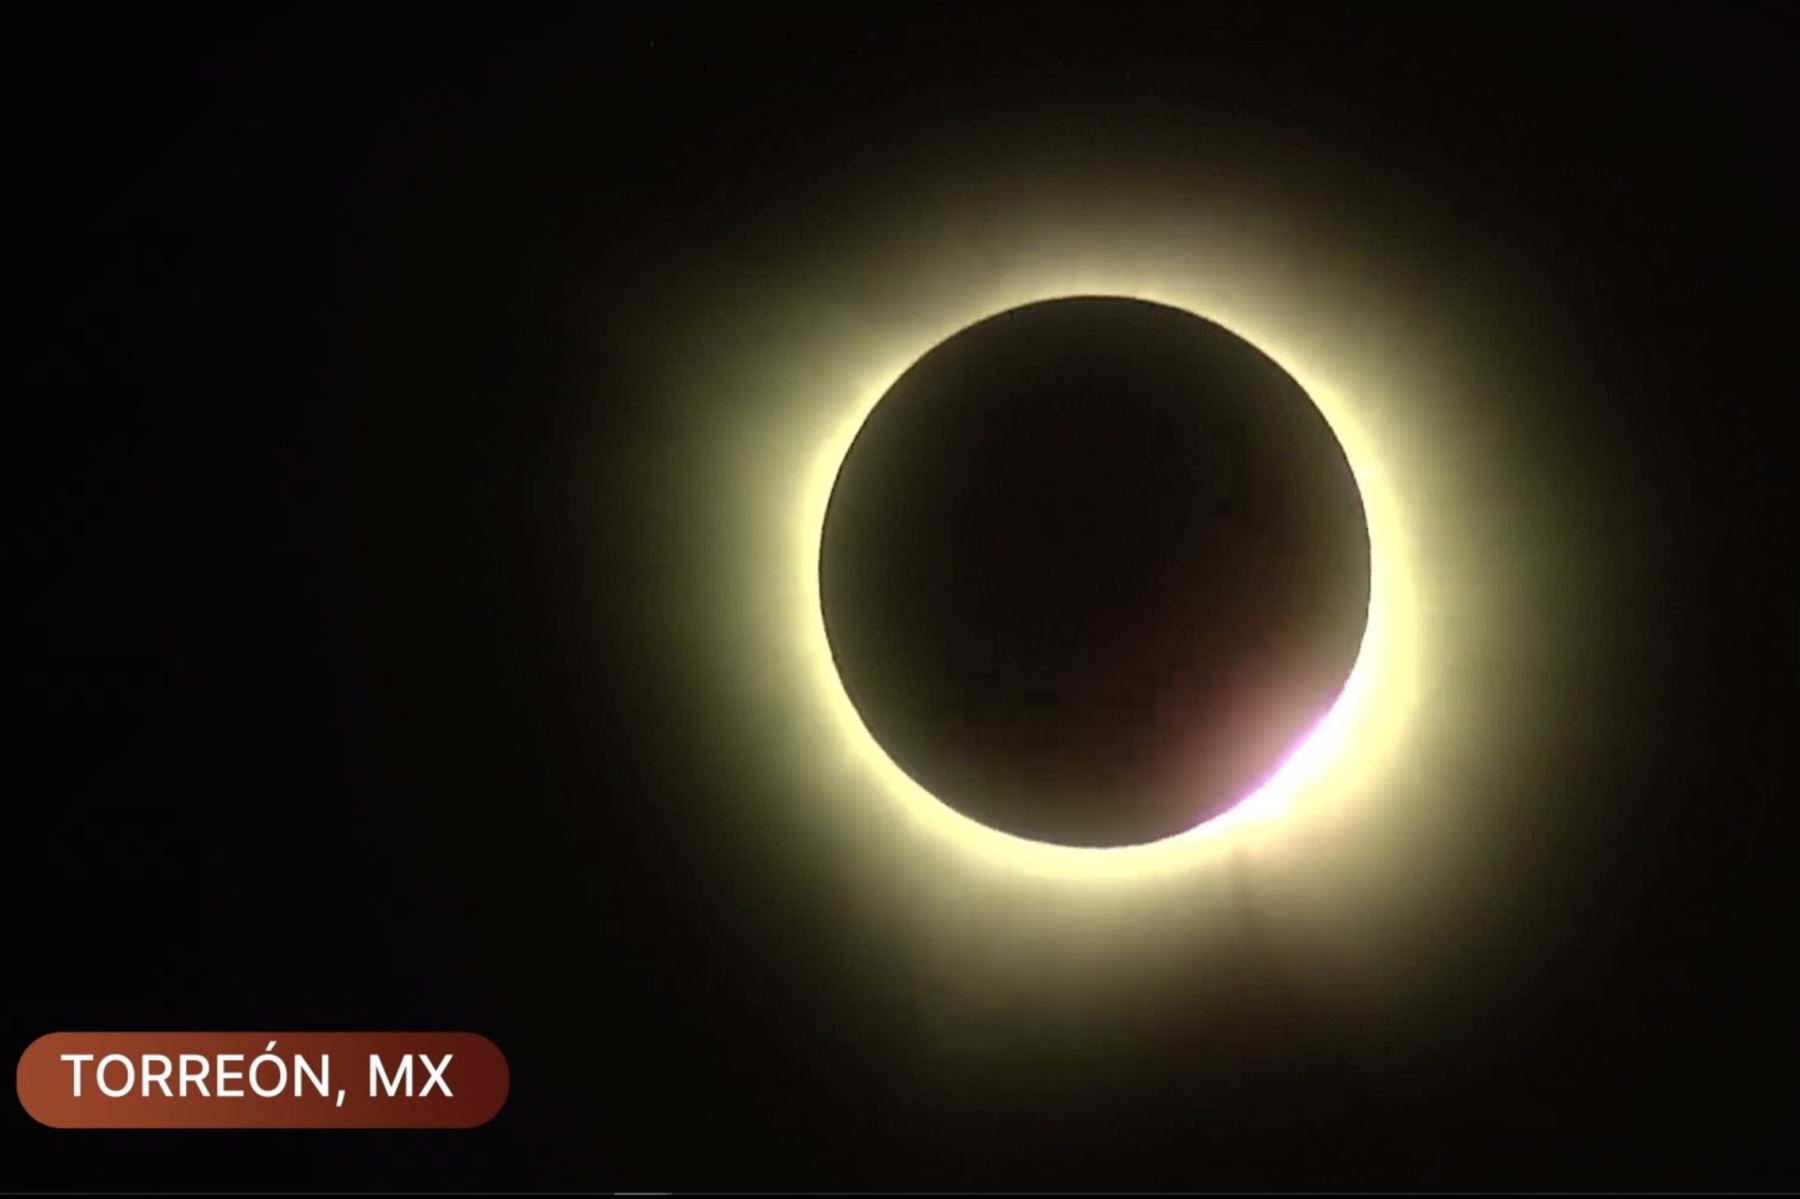 Así se observa el eclipse solar total en Torreón, México, donde se apreció primero en Norteamérica. Foto: NASA